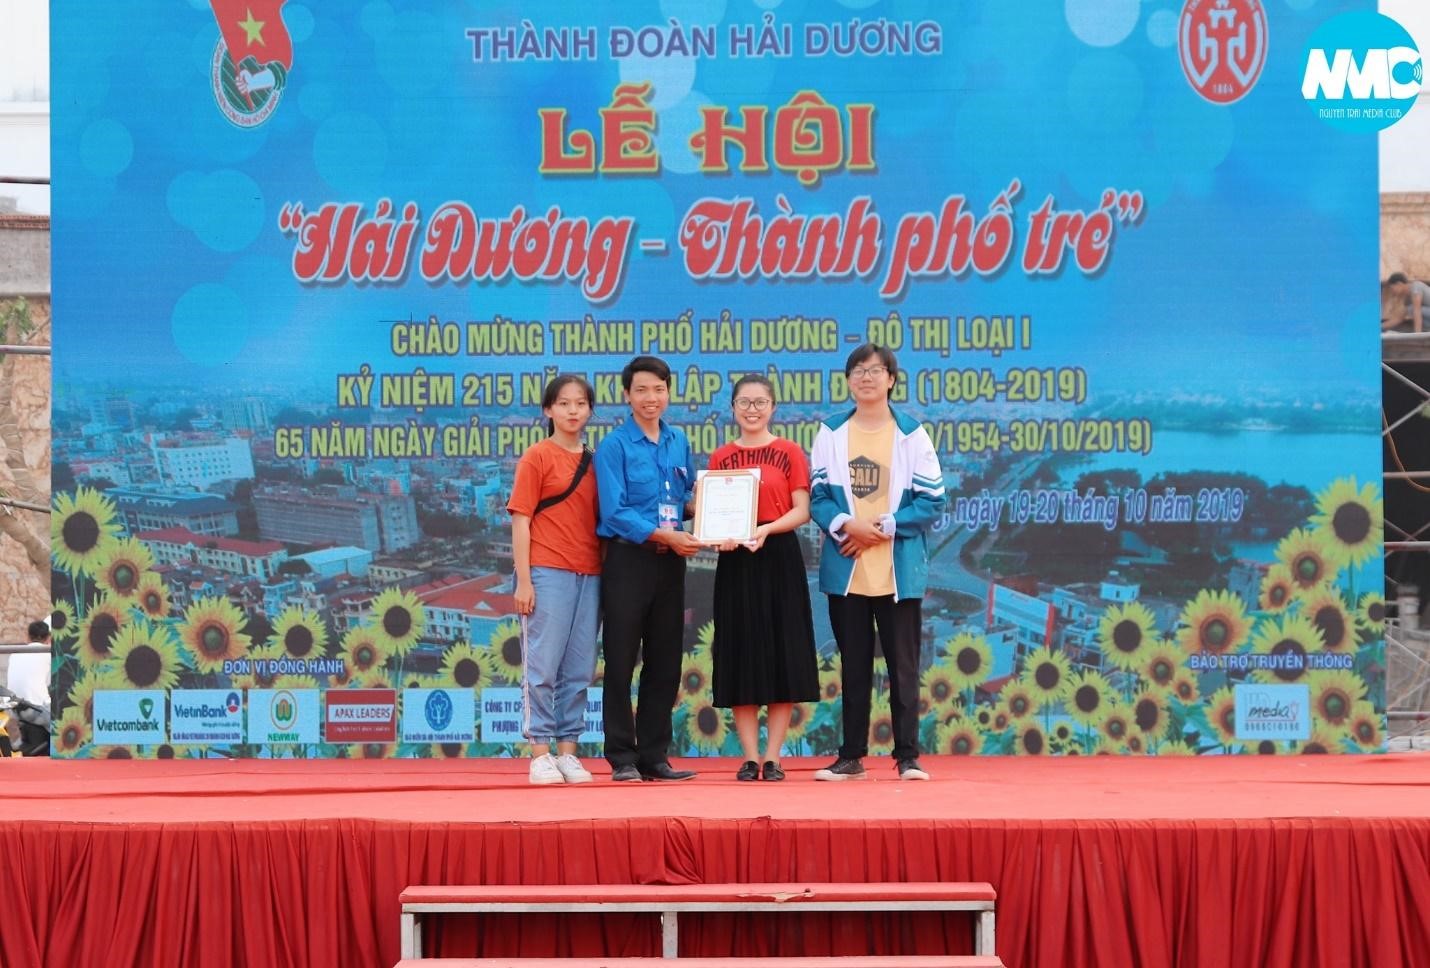 Đoàn trường Chuyên Nguyễn Trãi đạt giải nhất hội trại và giải Ba liên hoan Hát về Thành phố trẻ trong chuỗi hoạt động Chào mừng thành phố Hải Dương lên đô thị loại 1.